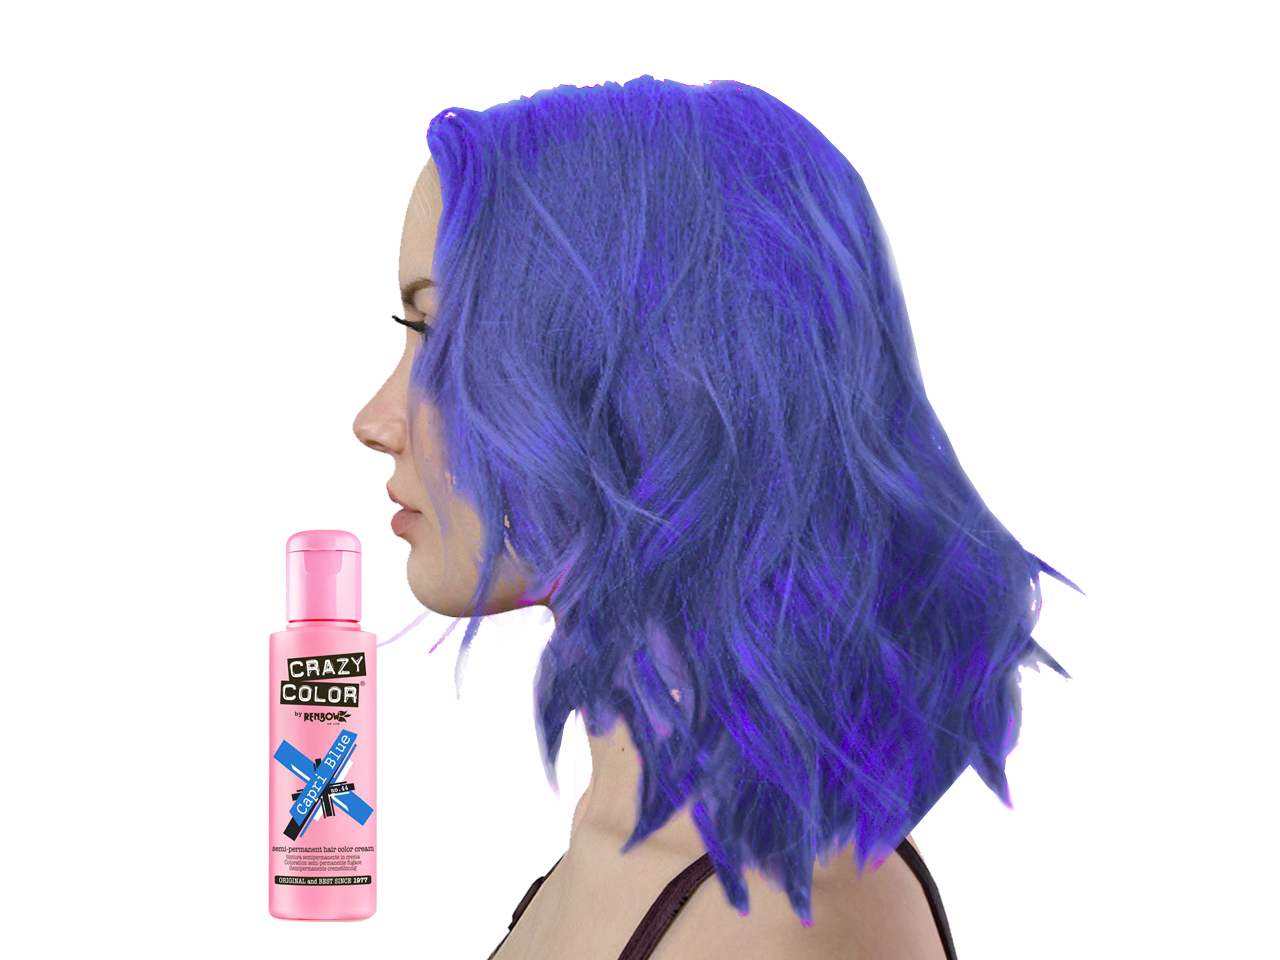 capri blue hair dye review